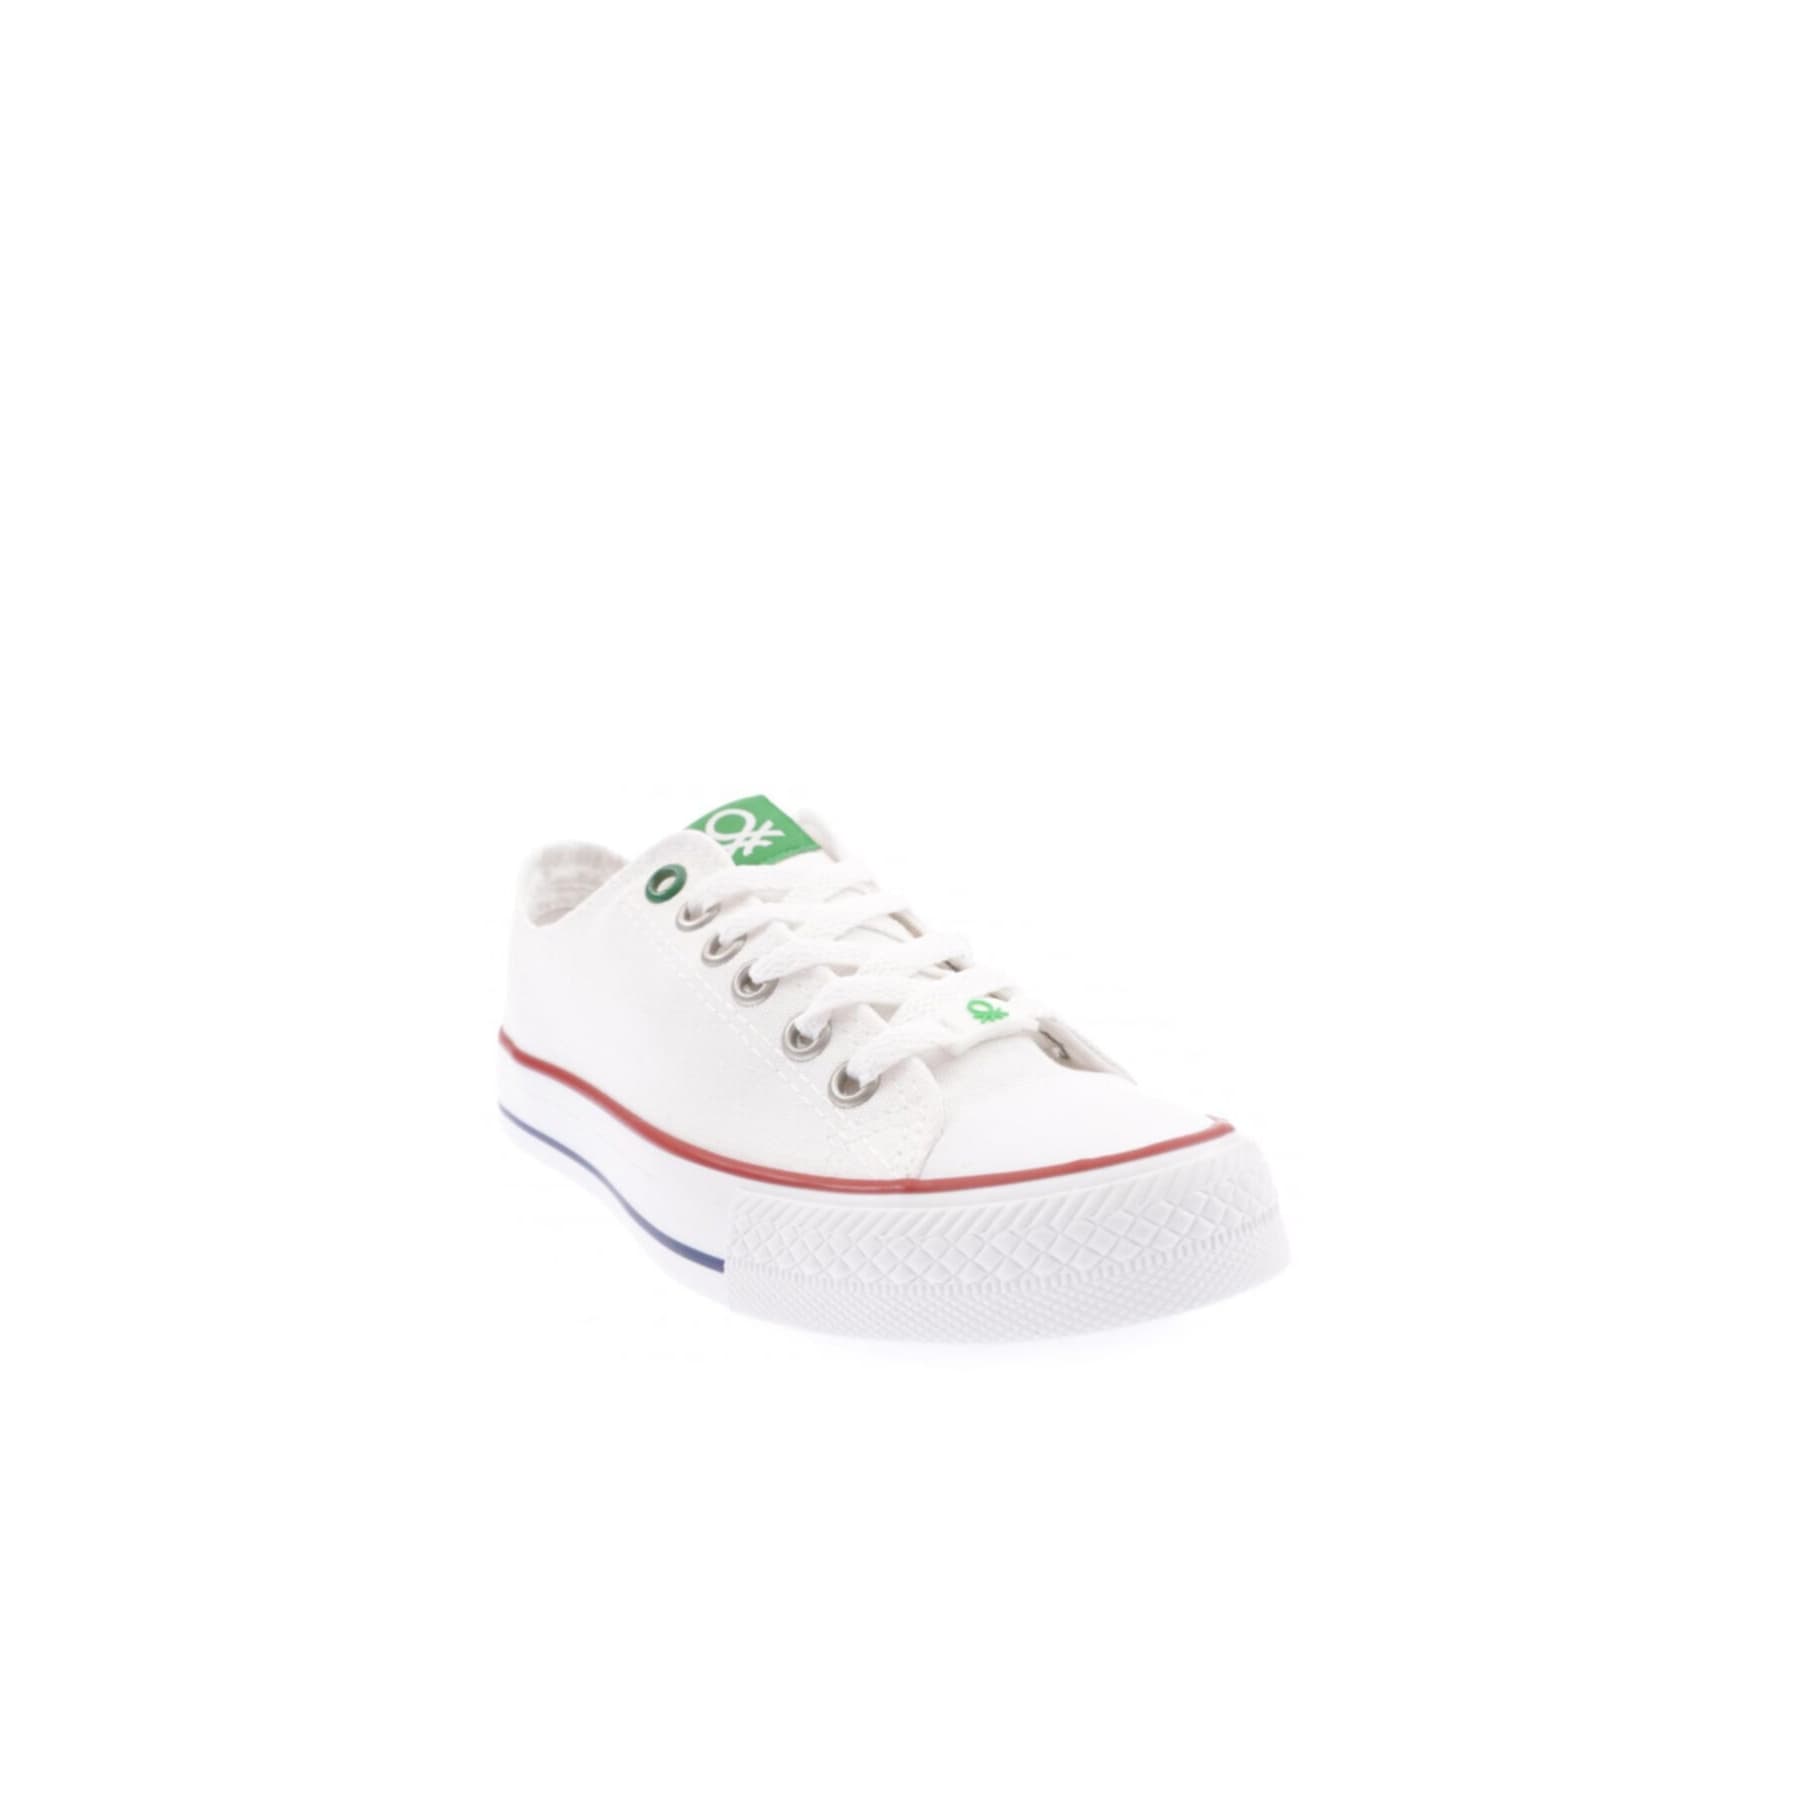 Benetton Kadın Beyaz Spor Ayakkabı (BN-30196-19)